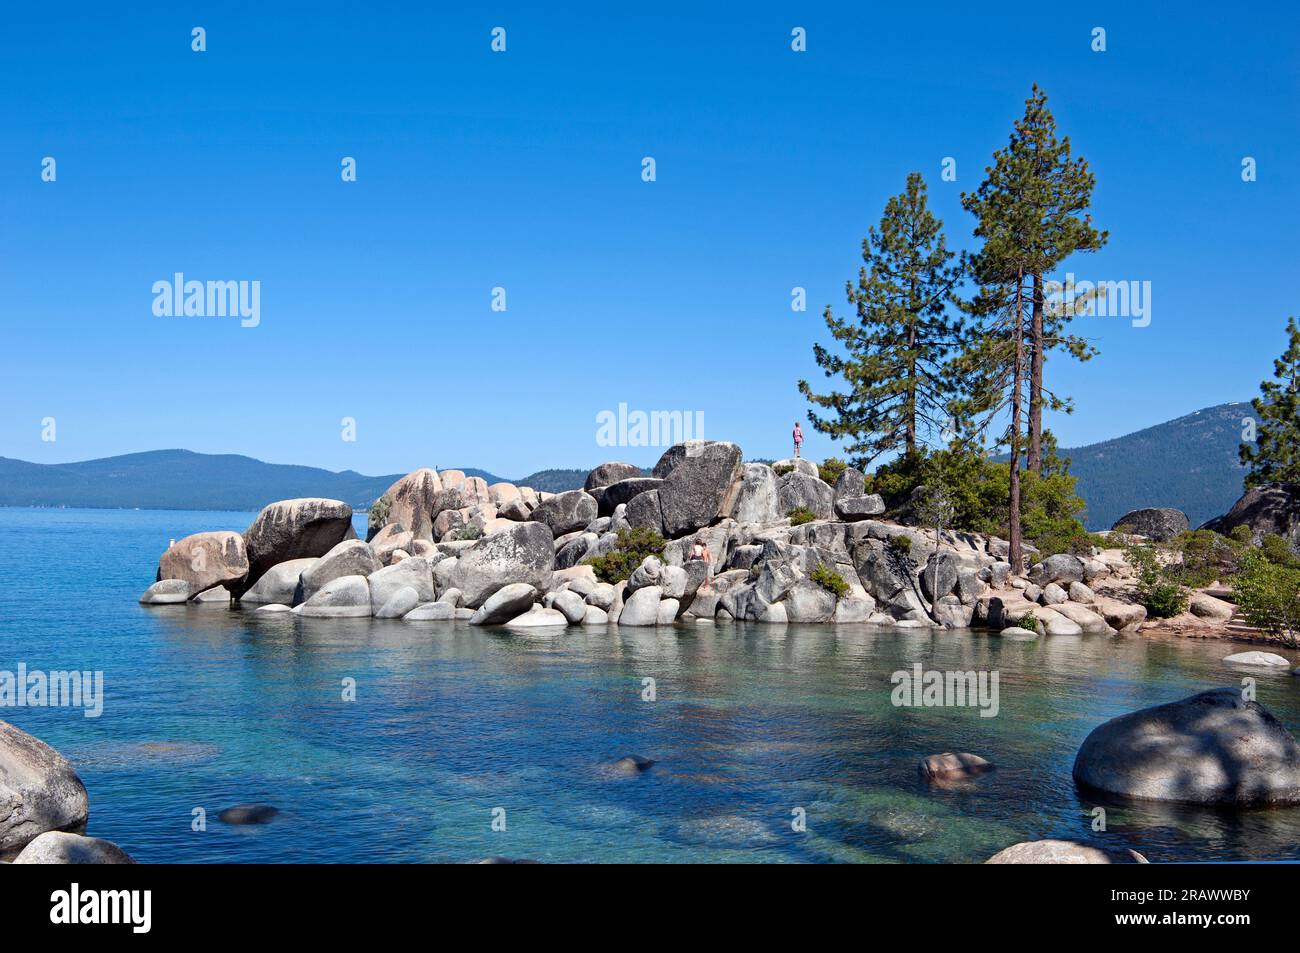 Scenic Sand Harbor in Lake Tahoe, California Stock Photo